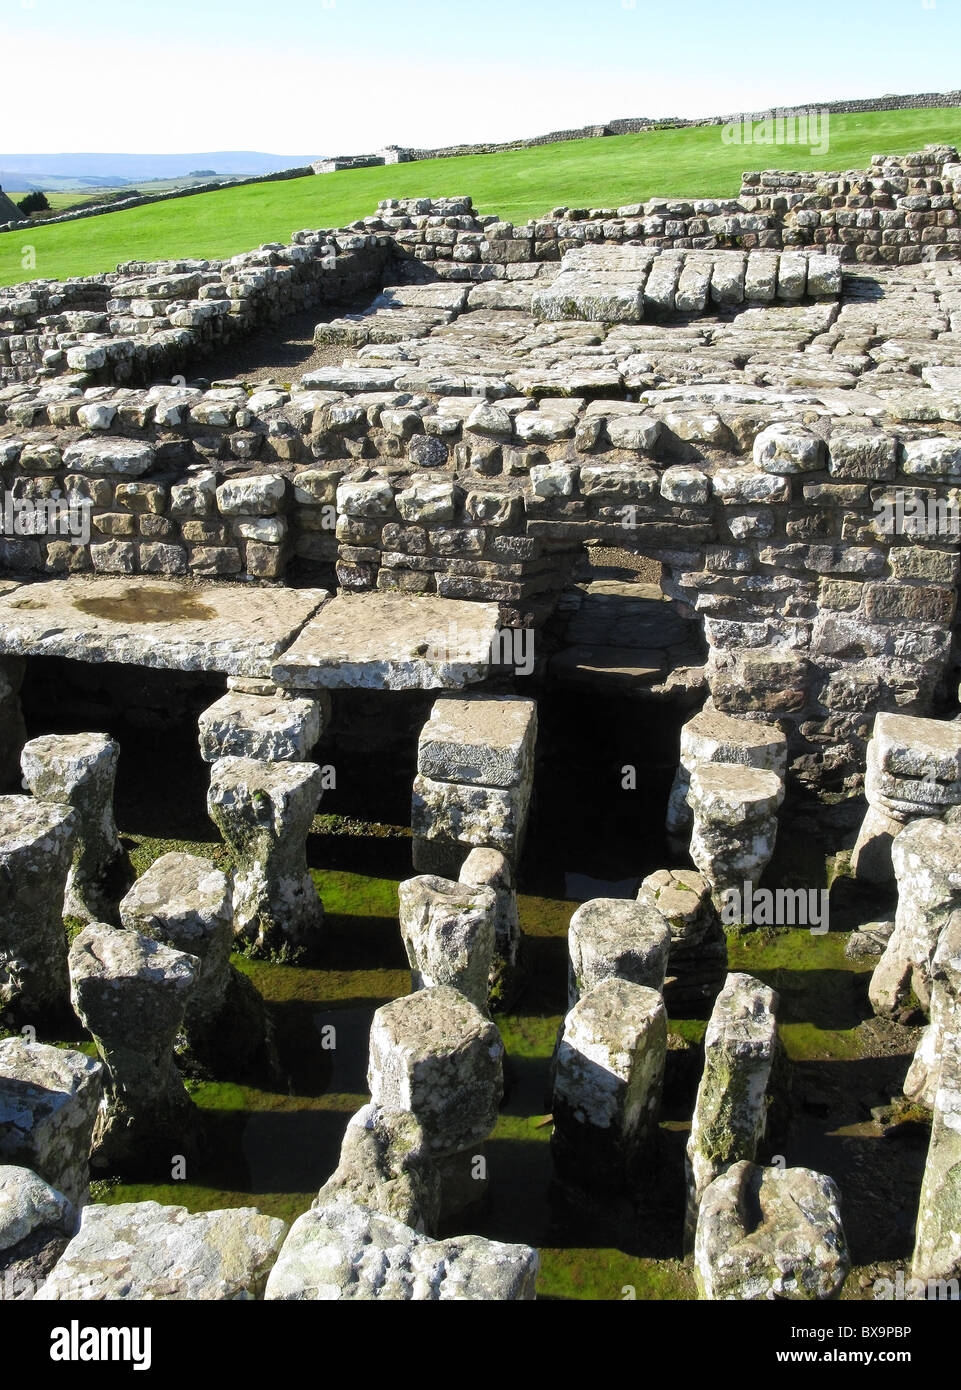 Système de chauffage par le sol, fort romain de housesteads, mur d'Hadrien, Northumberland, England, UK Banque D'Images